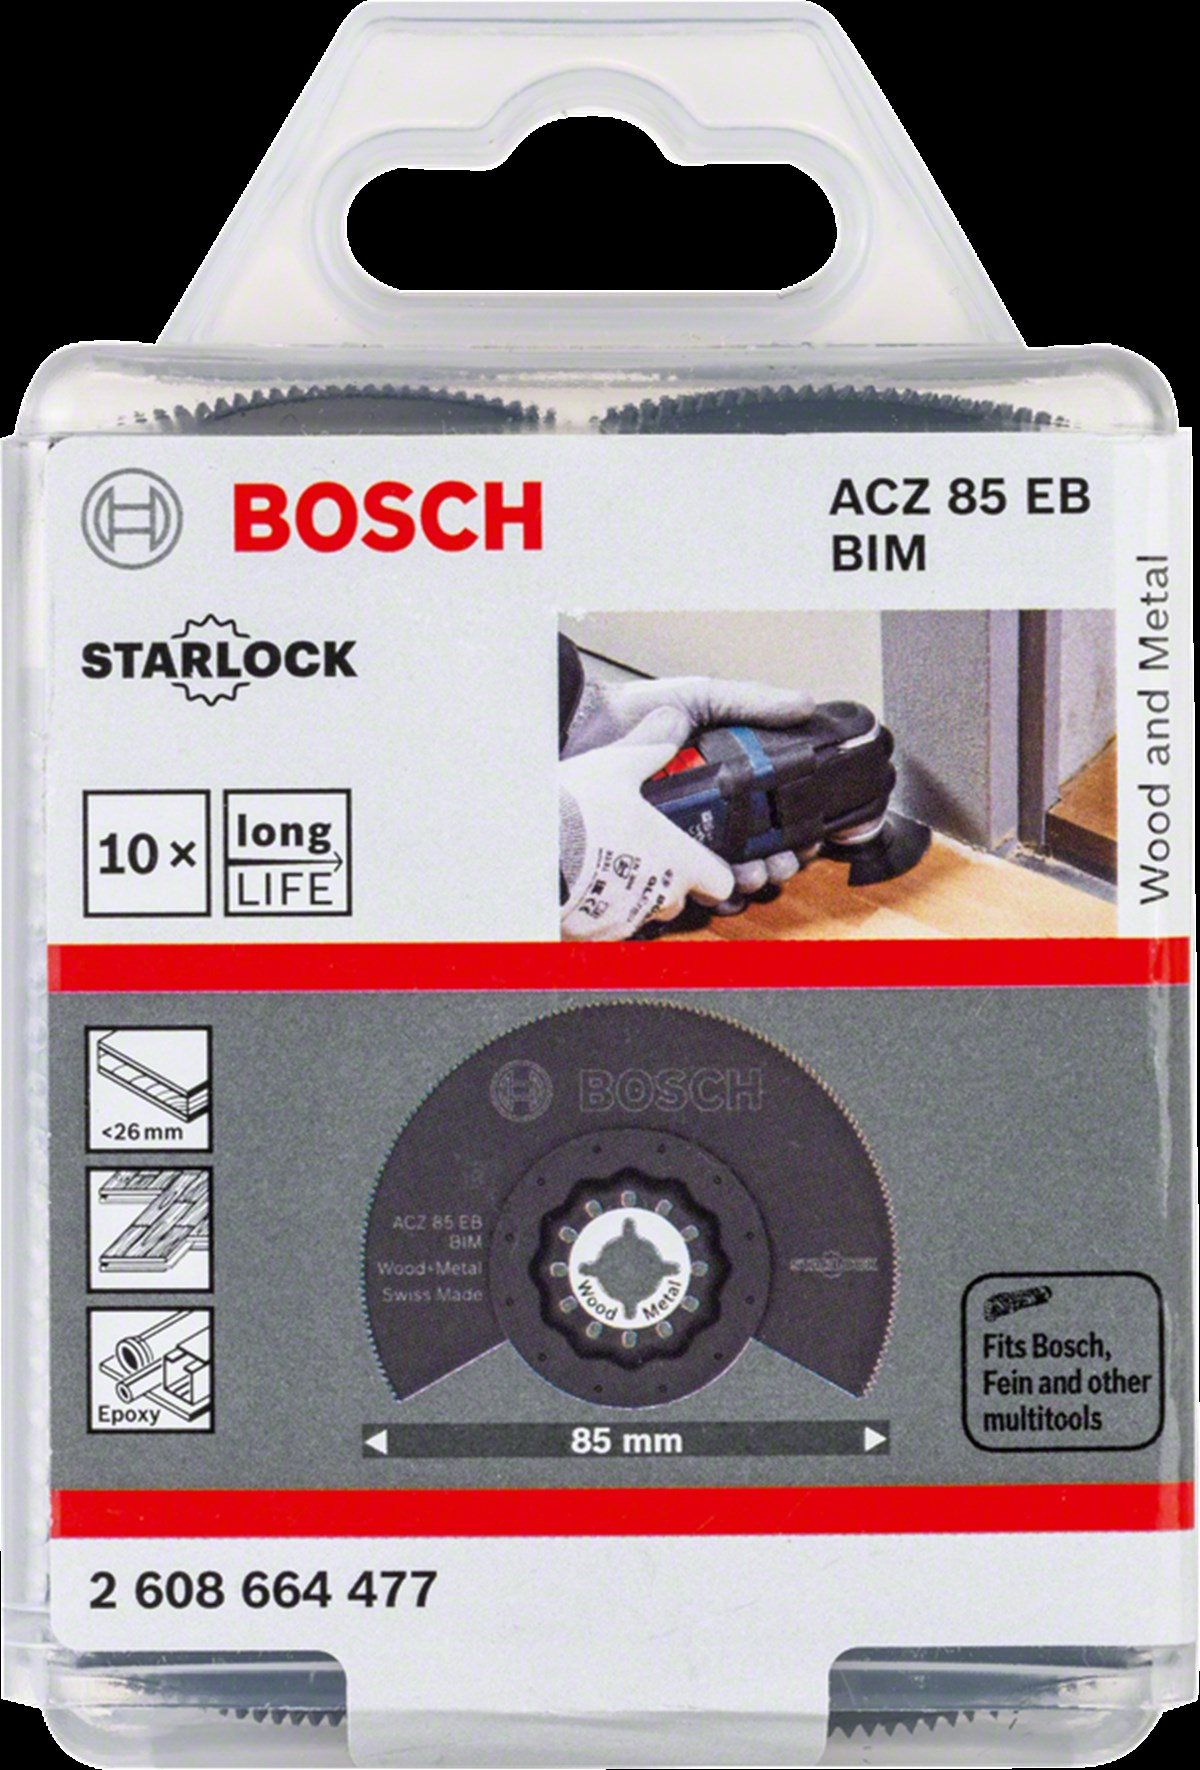 Bosch Starlock ACZ 85 EB BIM Ahşap ve Metal İçin Segman Testere